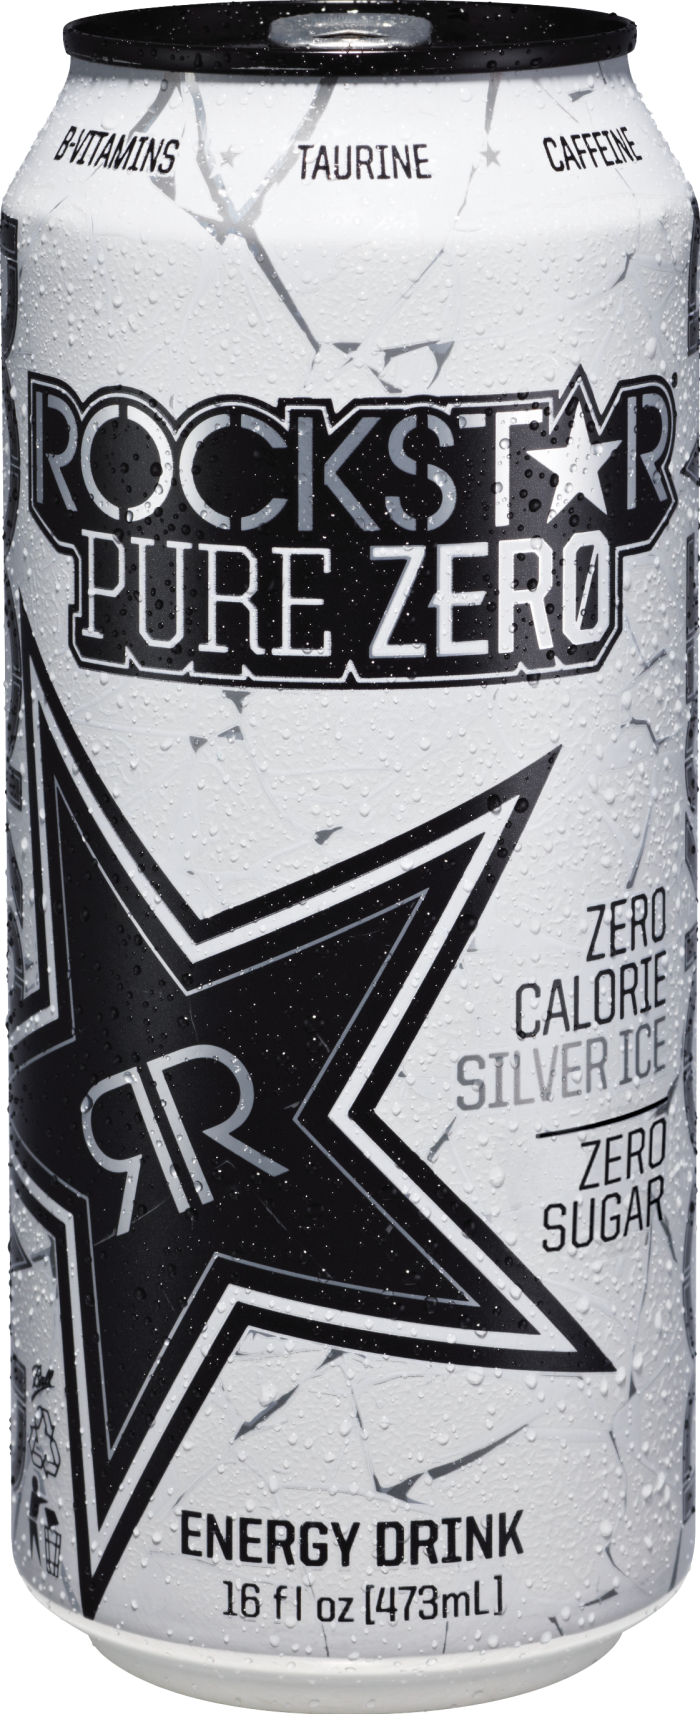 rockstar pure zero silver ice